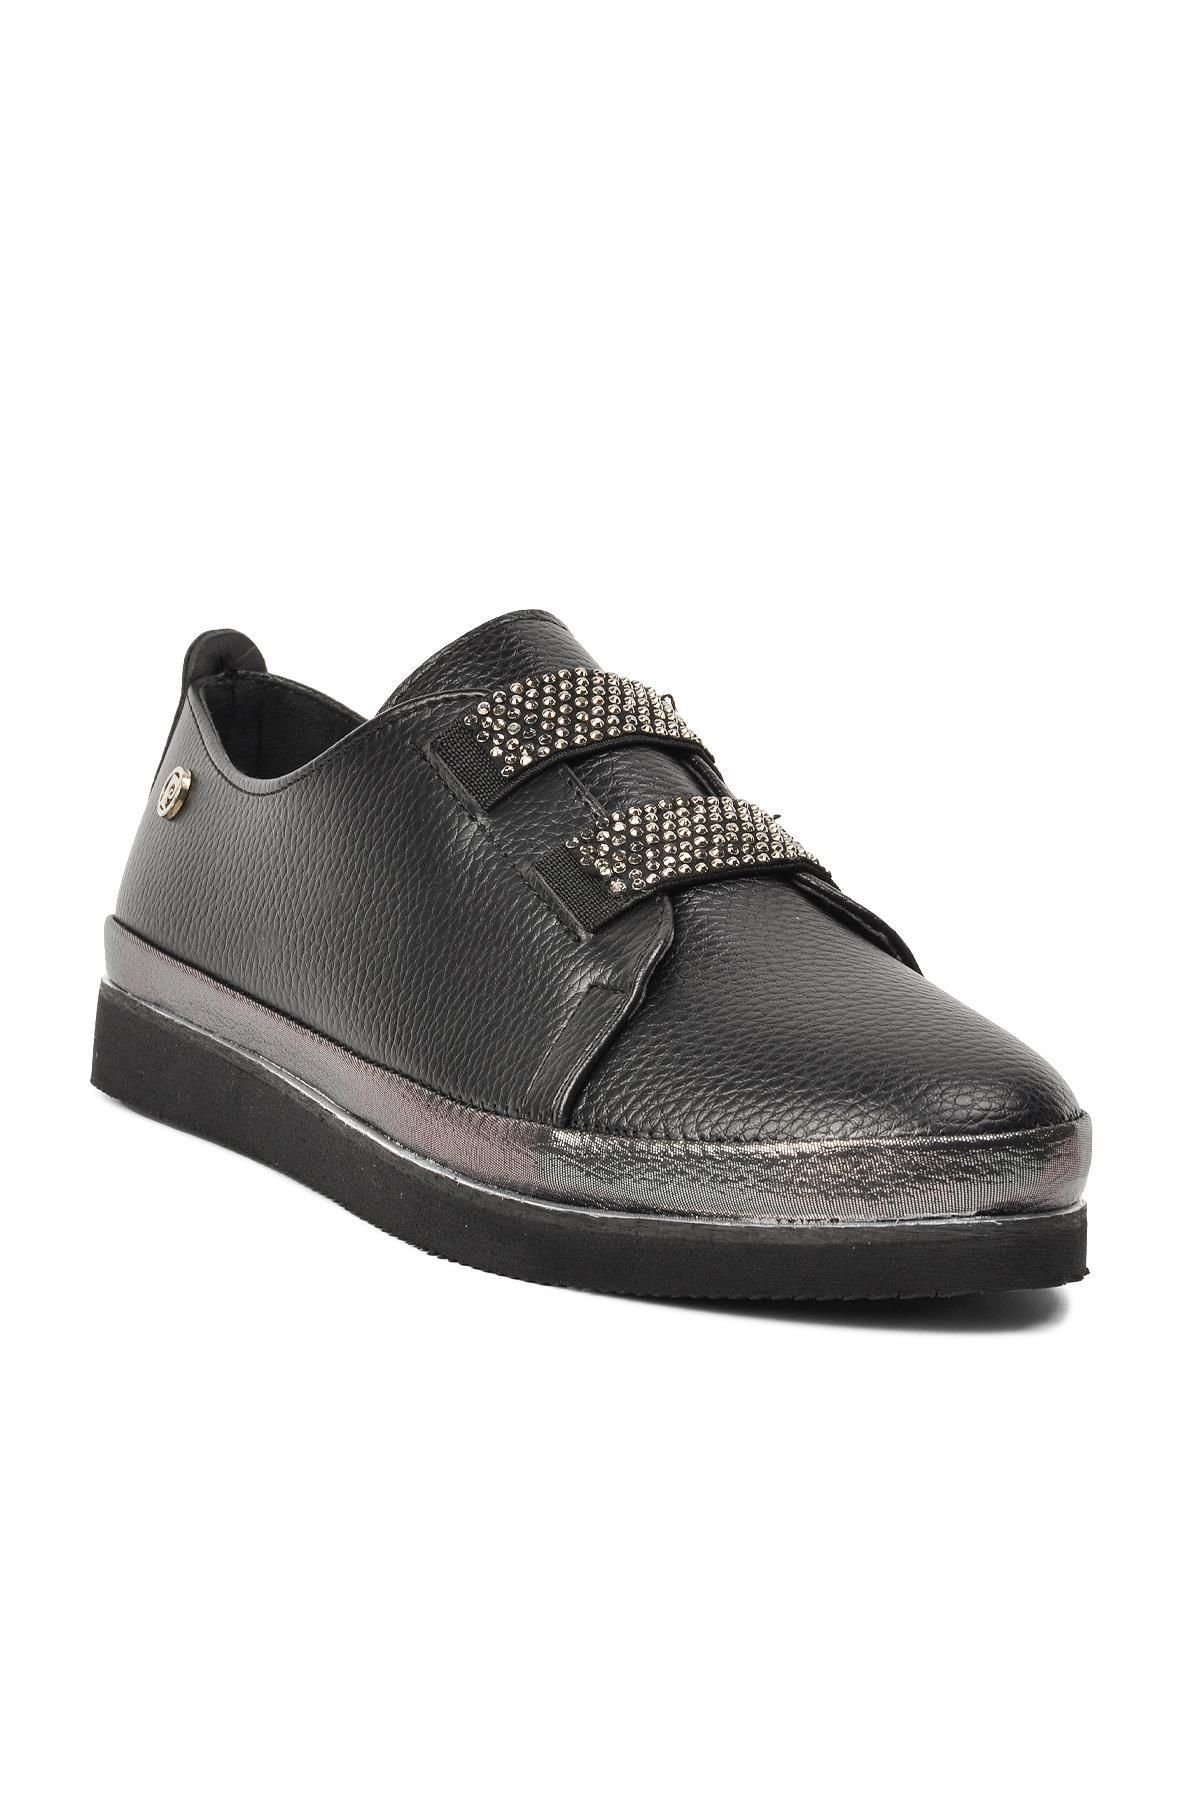 Pierre Cardin Pc-51920 Siyah Kadın Casual Ayakkabı